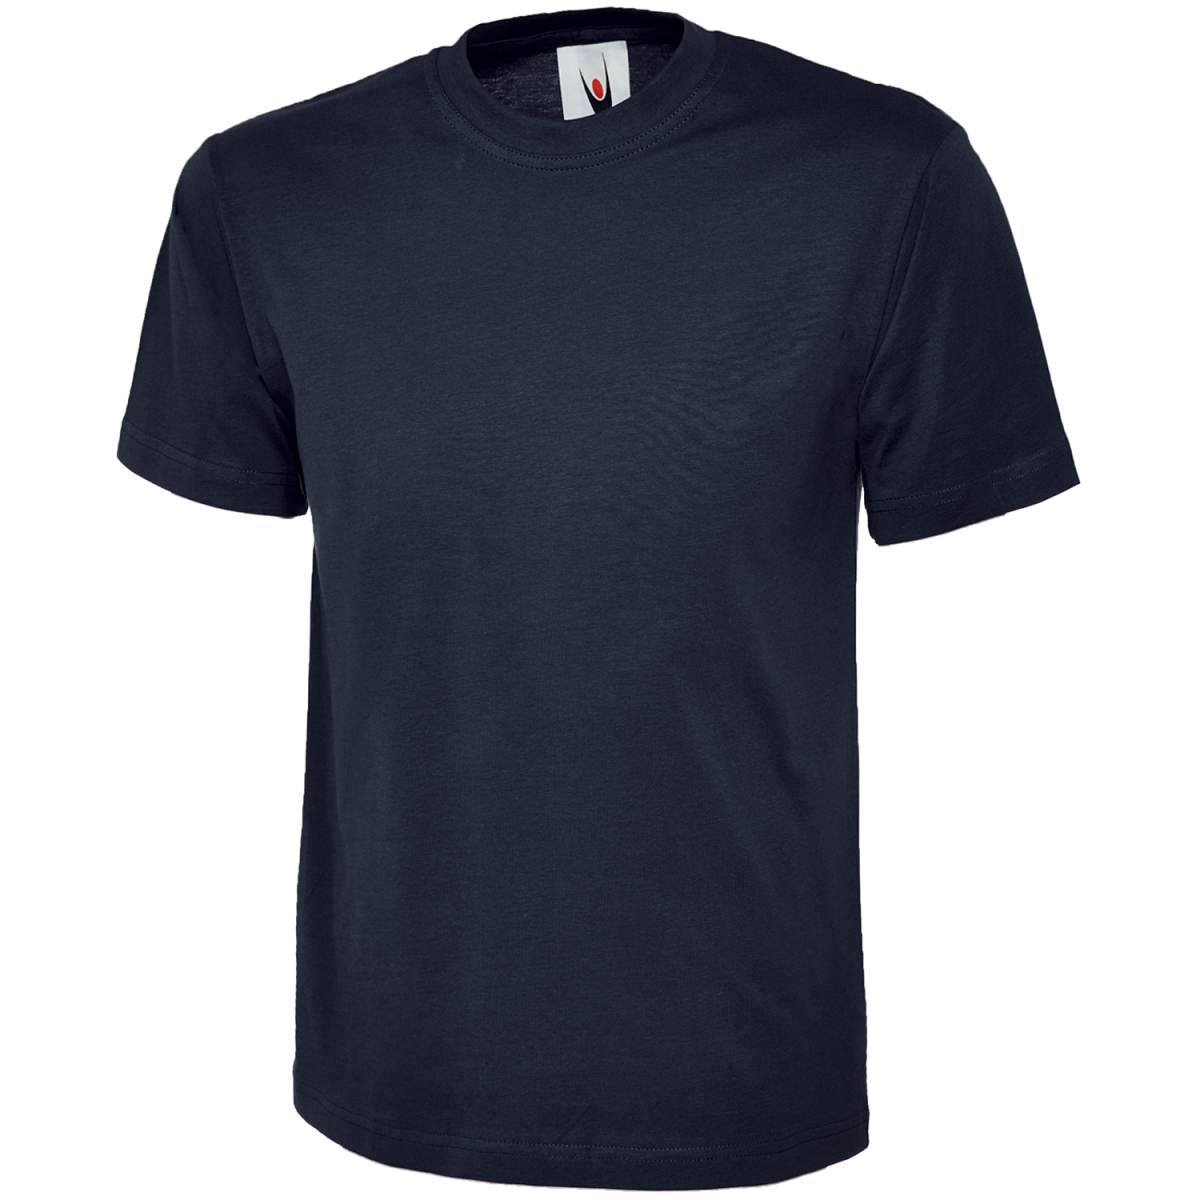 Moderne und ergonomische 4,49 € Modell - elysee, ULRICH T-Shirts